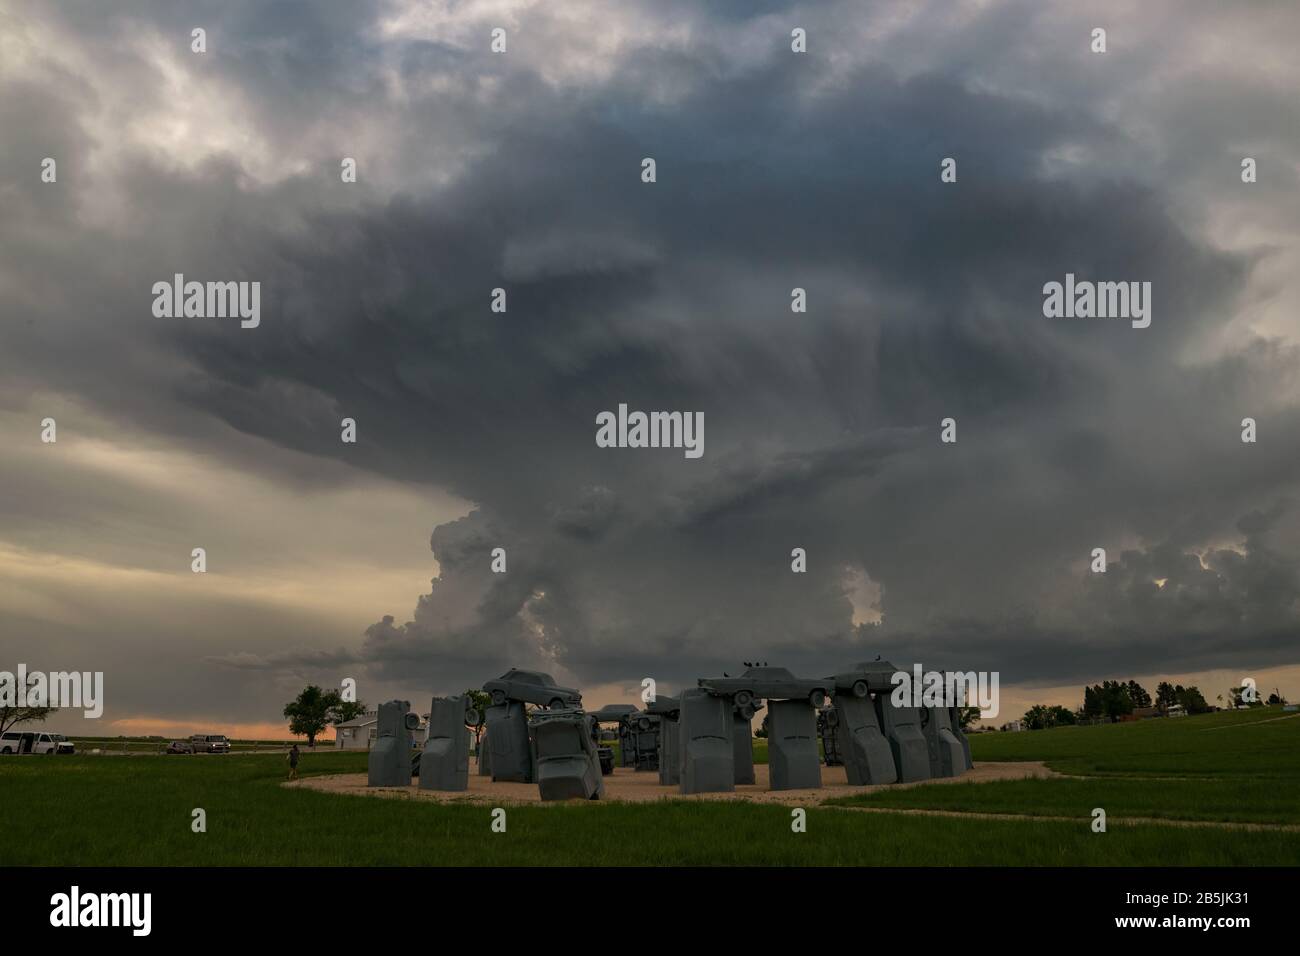 Nebraska Touristenattraktion mit dem Titel "Carhenge" mit einem schweren Gewitter im Hintergrund Stockfoto